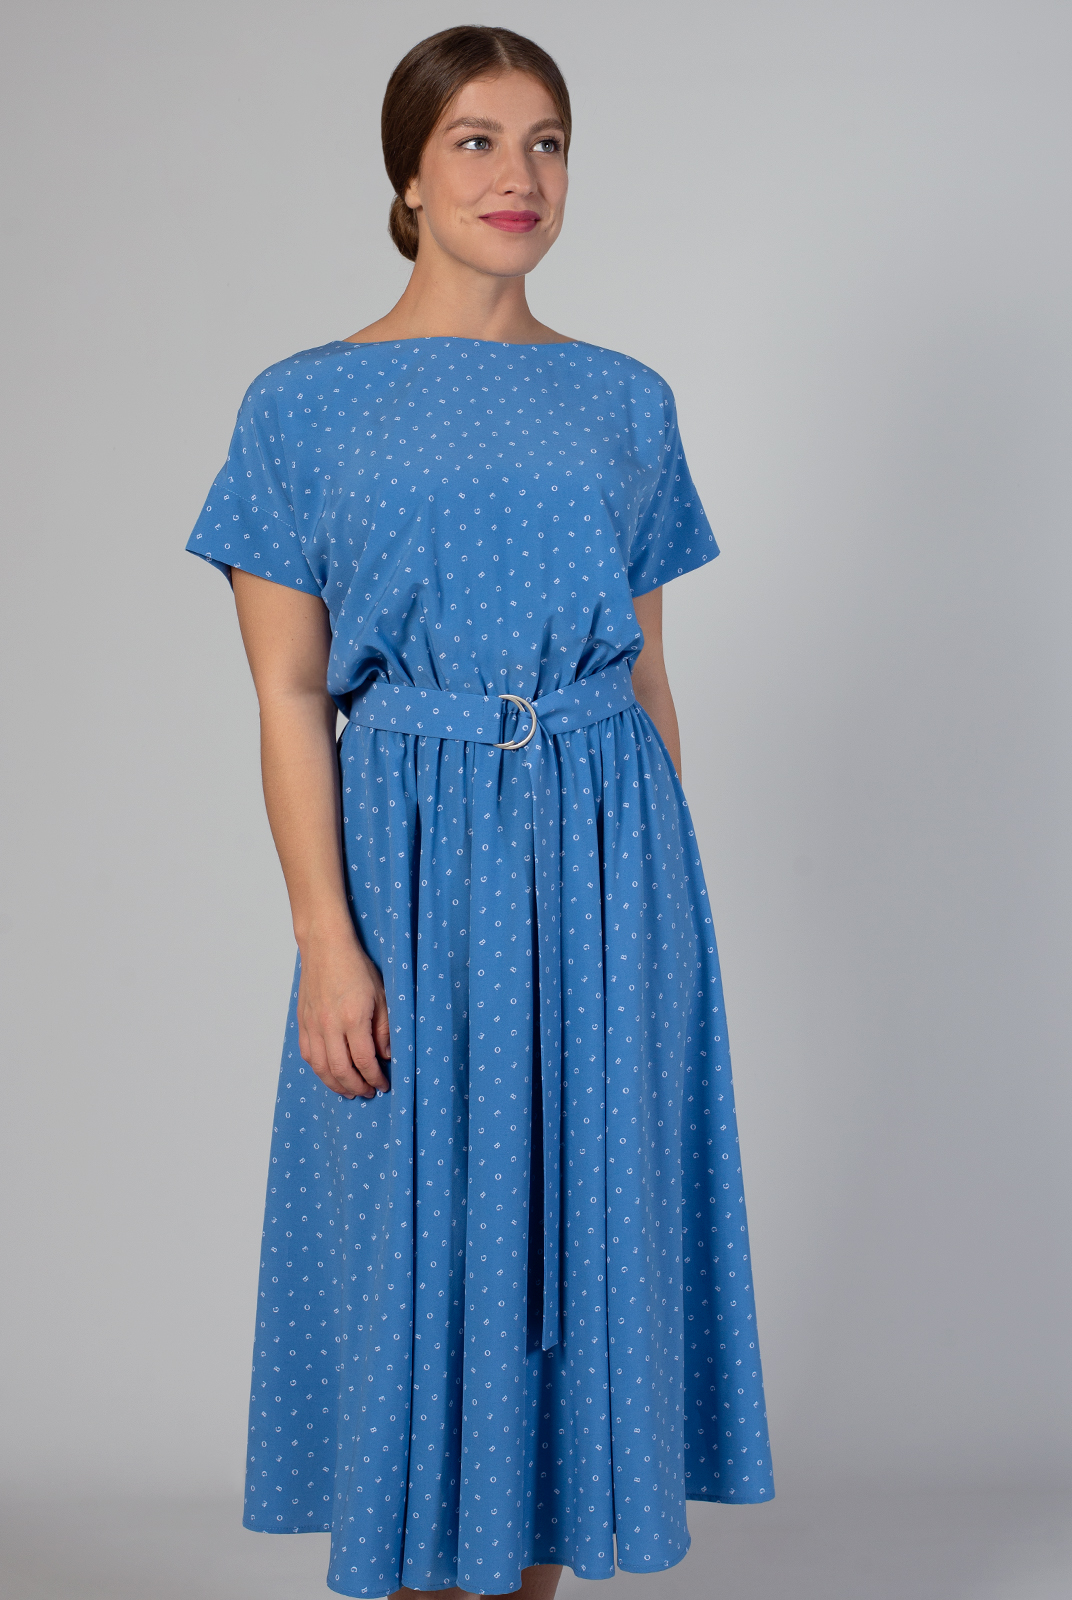 Платье женское Mila Bezgerts 3989зп голубое 42 RU